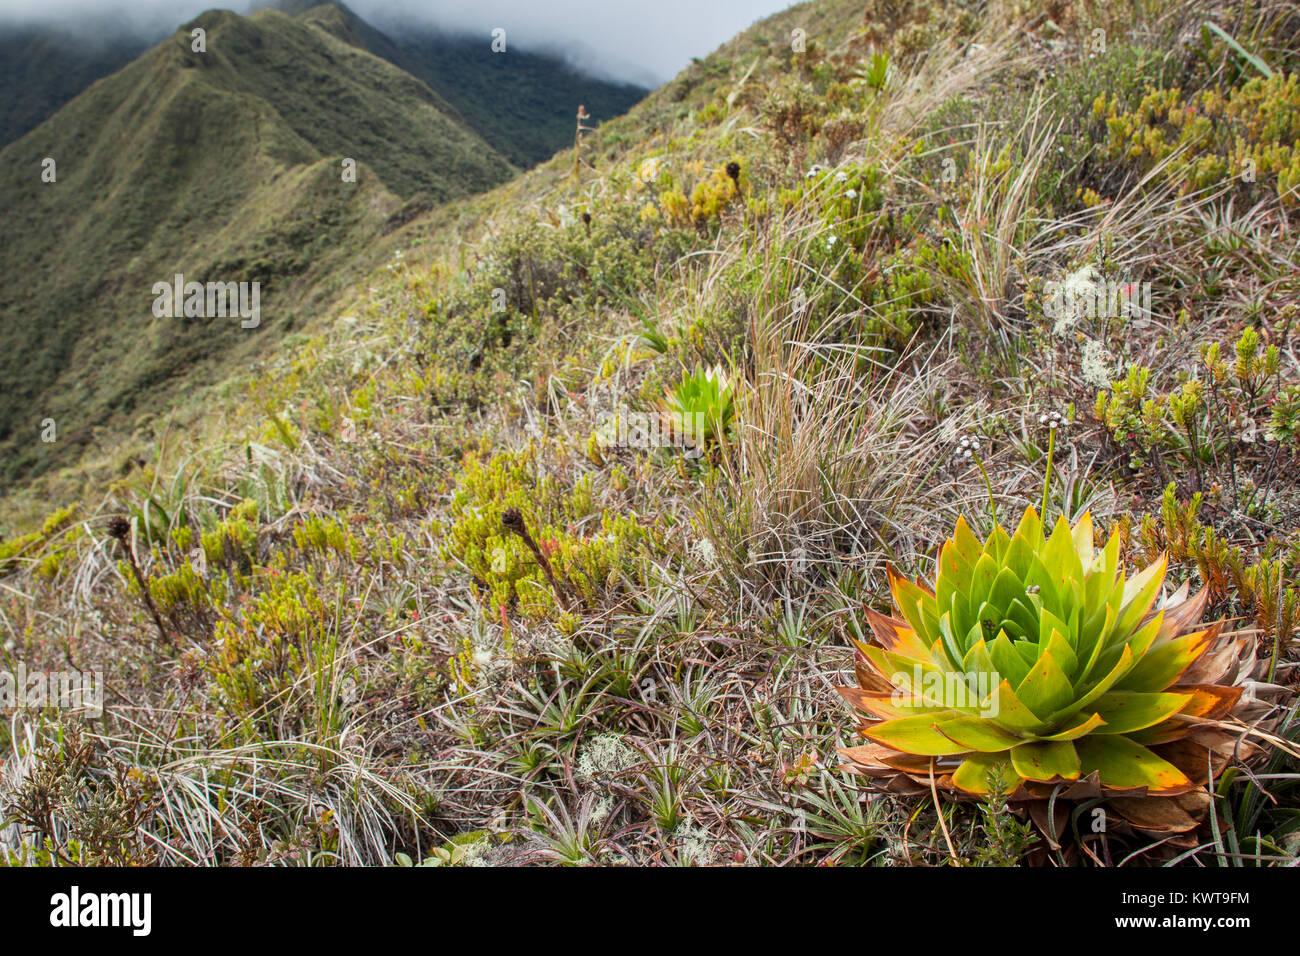 Gräser und ausgestreckten Gefäßpflanzen dominieren die Elevation paramo Ökosystem der Anden. Podocarpus National Park, Cajanuma Sektor, Ecuador. Stockfoto